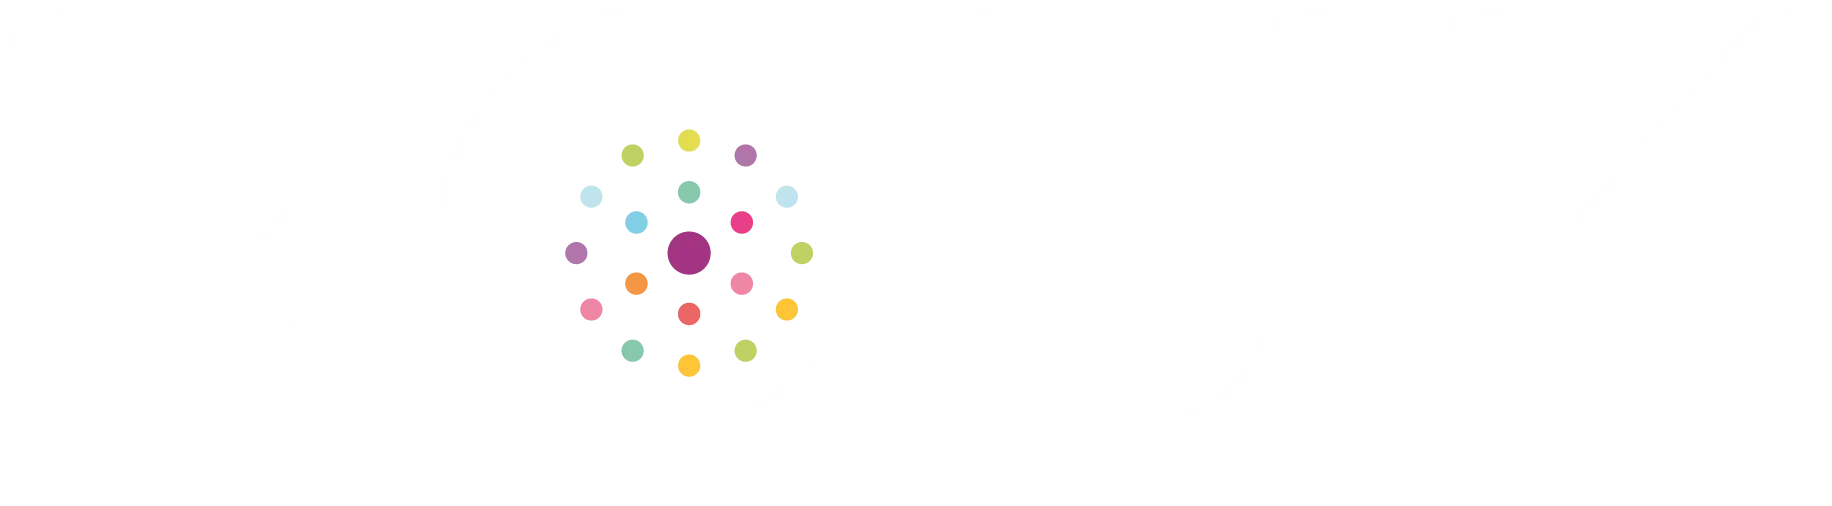 RCUK logo white